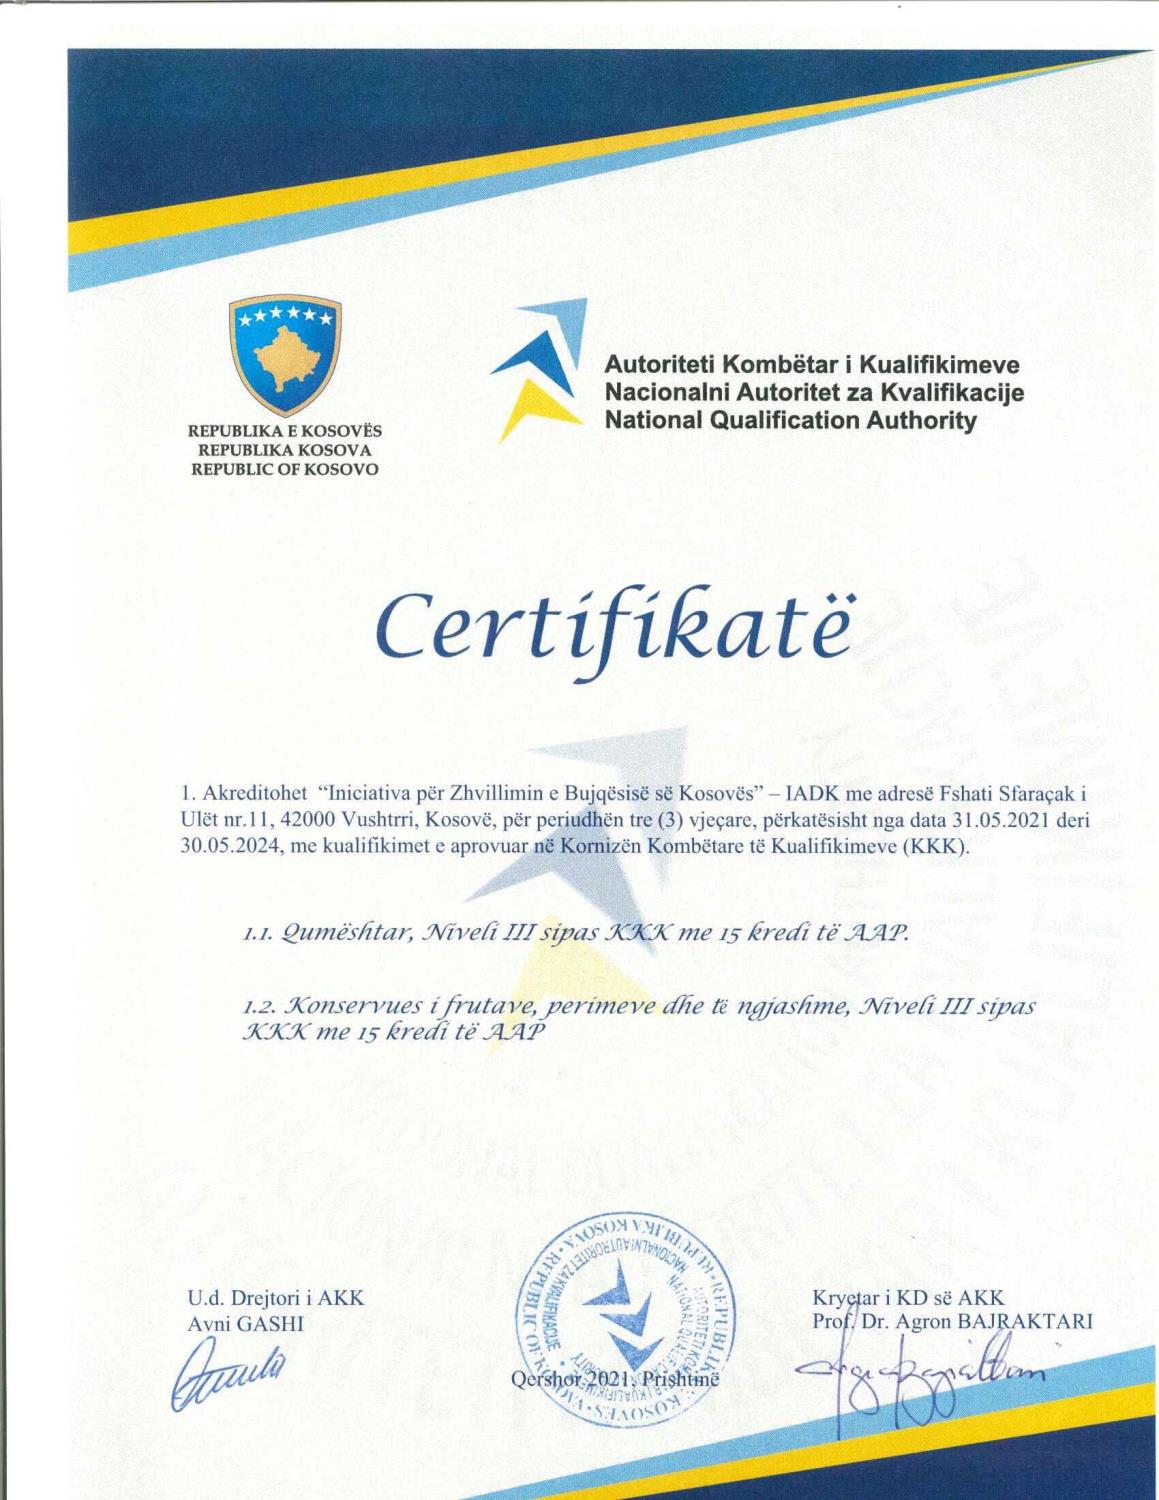 IADK akreditohet nga AKK në programet “Qumështar” dhe “Konservues i frutave, perimeve dhe të ngjashme”